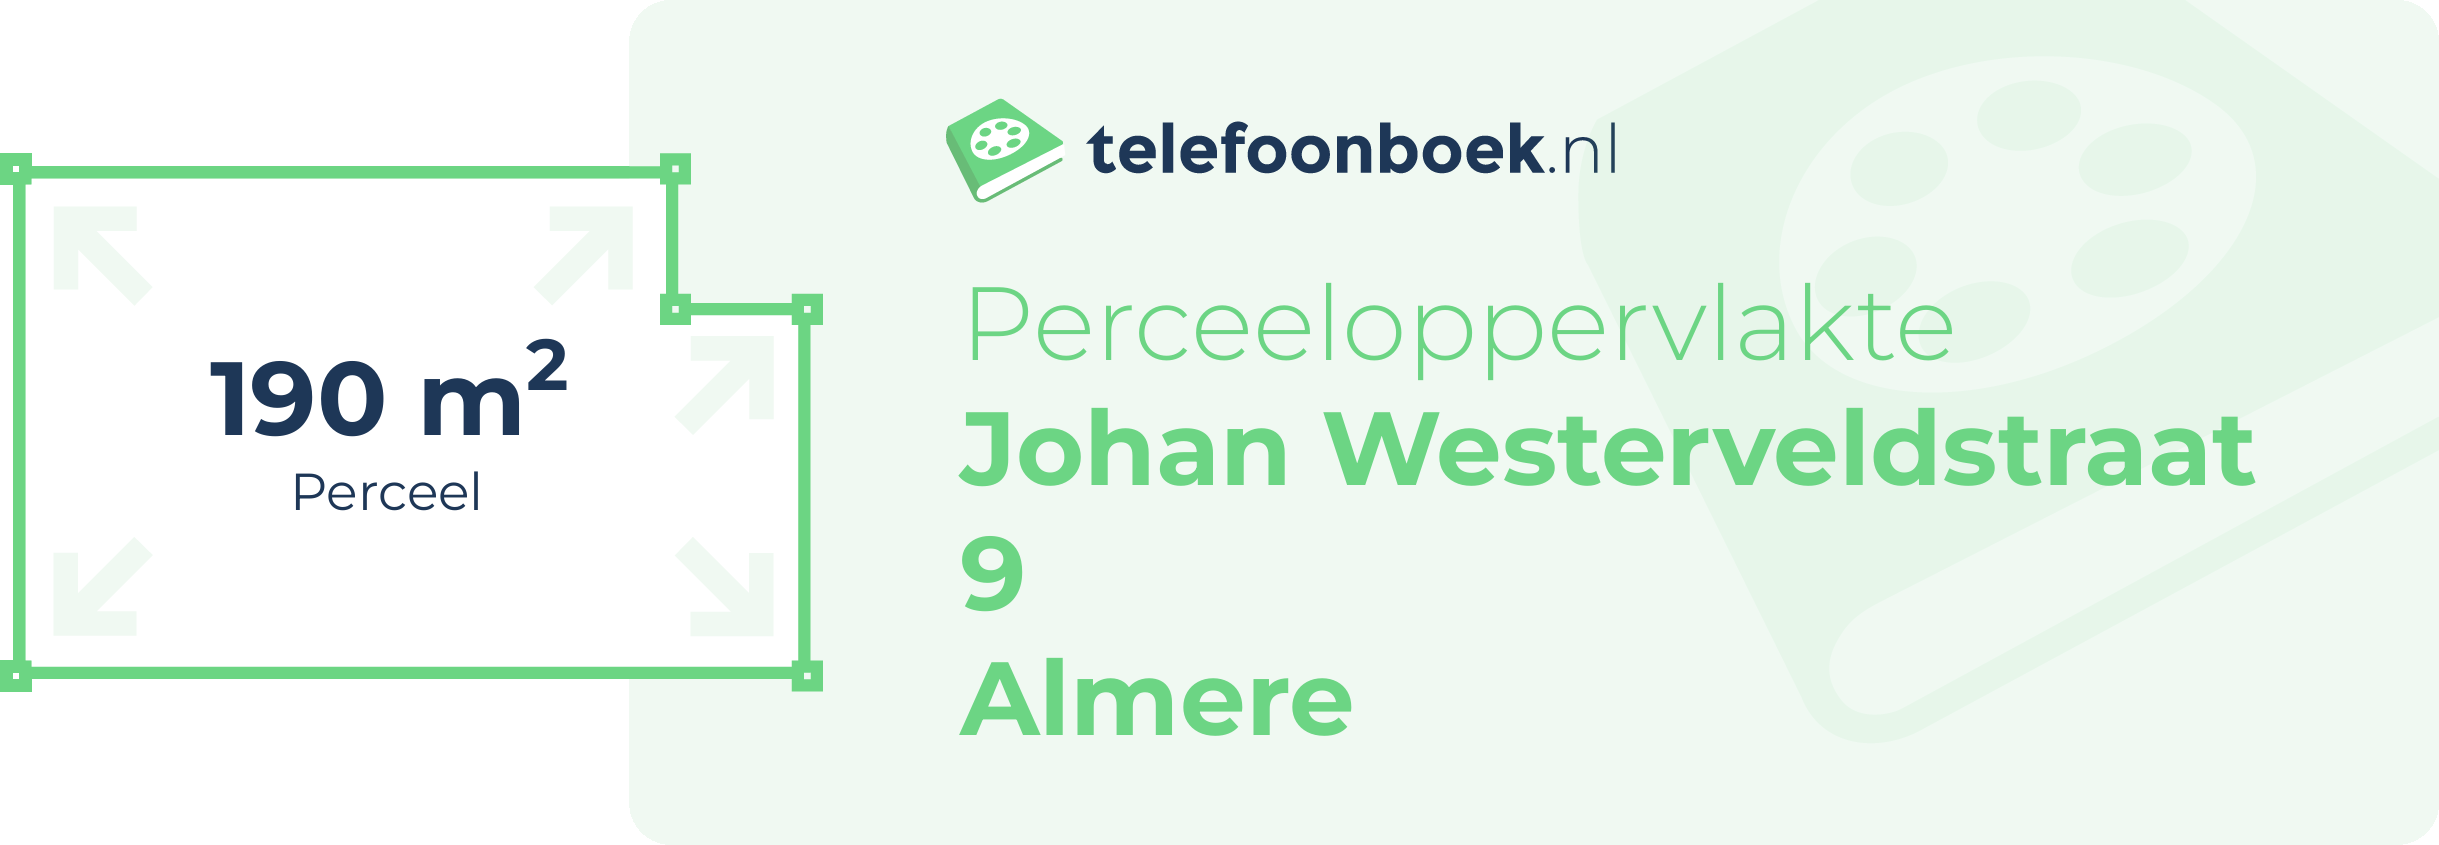 Perceeloppervlakte Johan Westerveldstraat 9 Almere